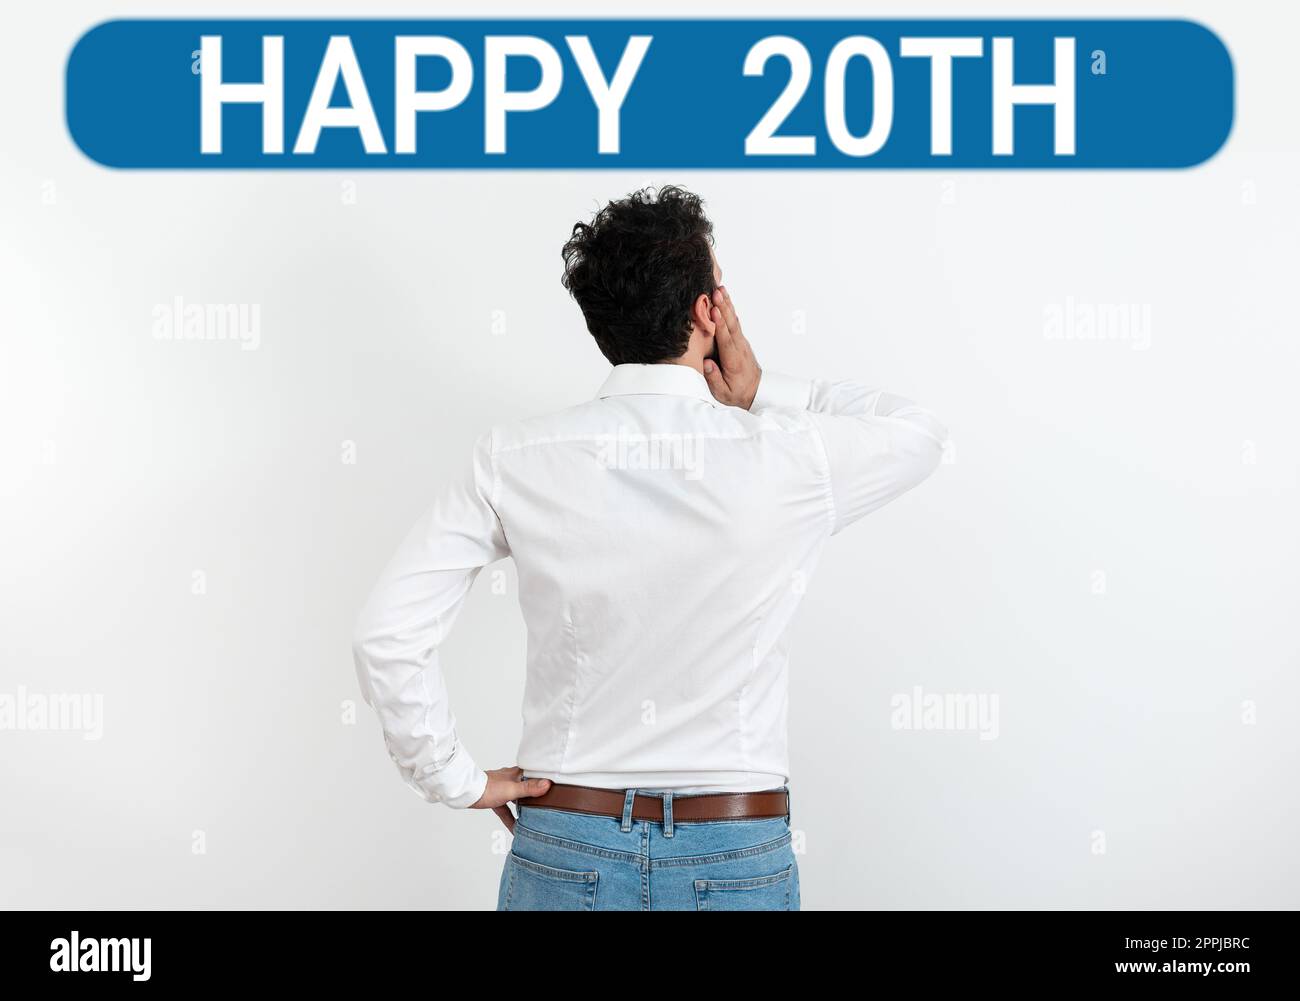 Textunterschrift präsentiert: Happy 20. Geschäftsansatz ein erfreulicher Anlass für eine besondere Veranstaltung anlässlich des 20. Jahres Stockfoto